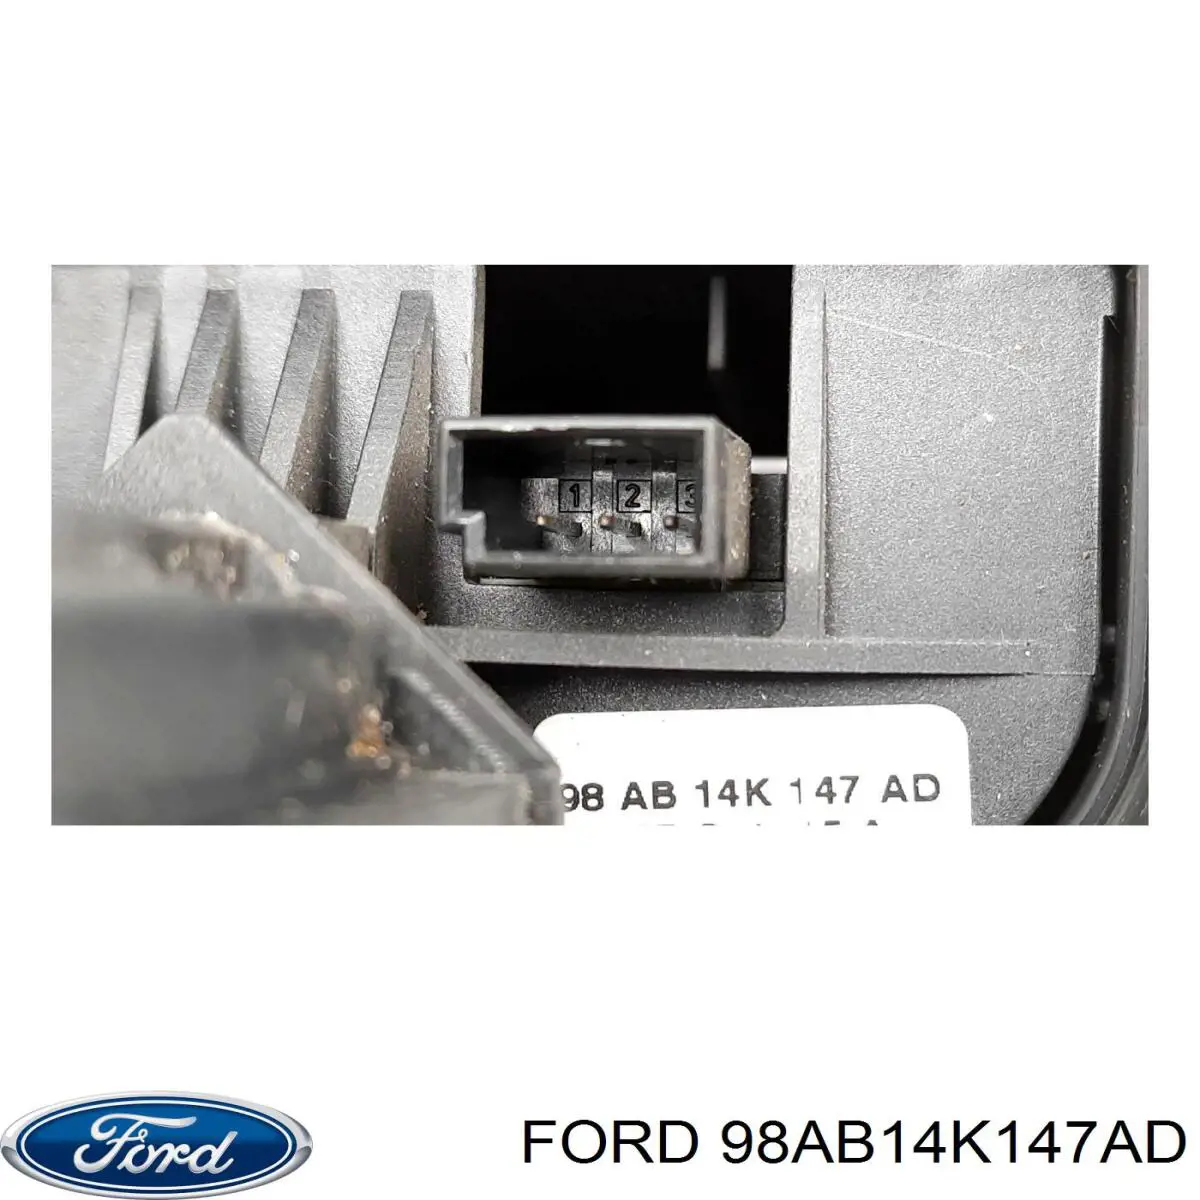 98AB14K147AD Ford conmutador en la columna de dirección con función de control radio